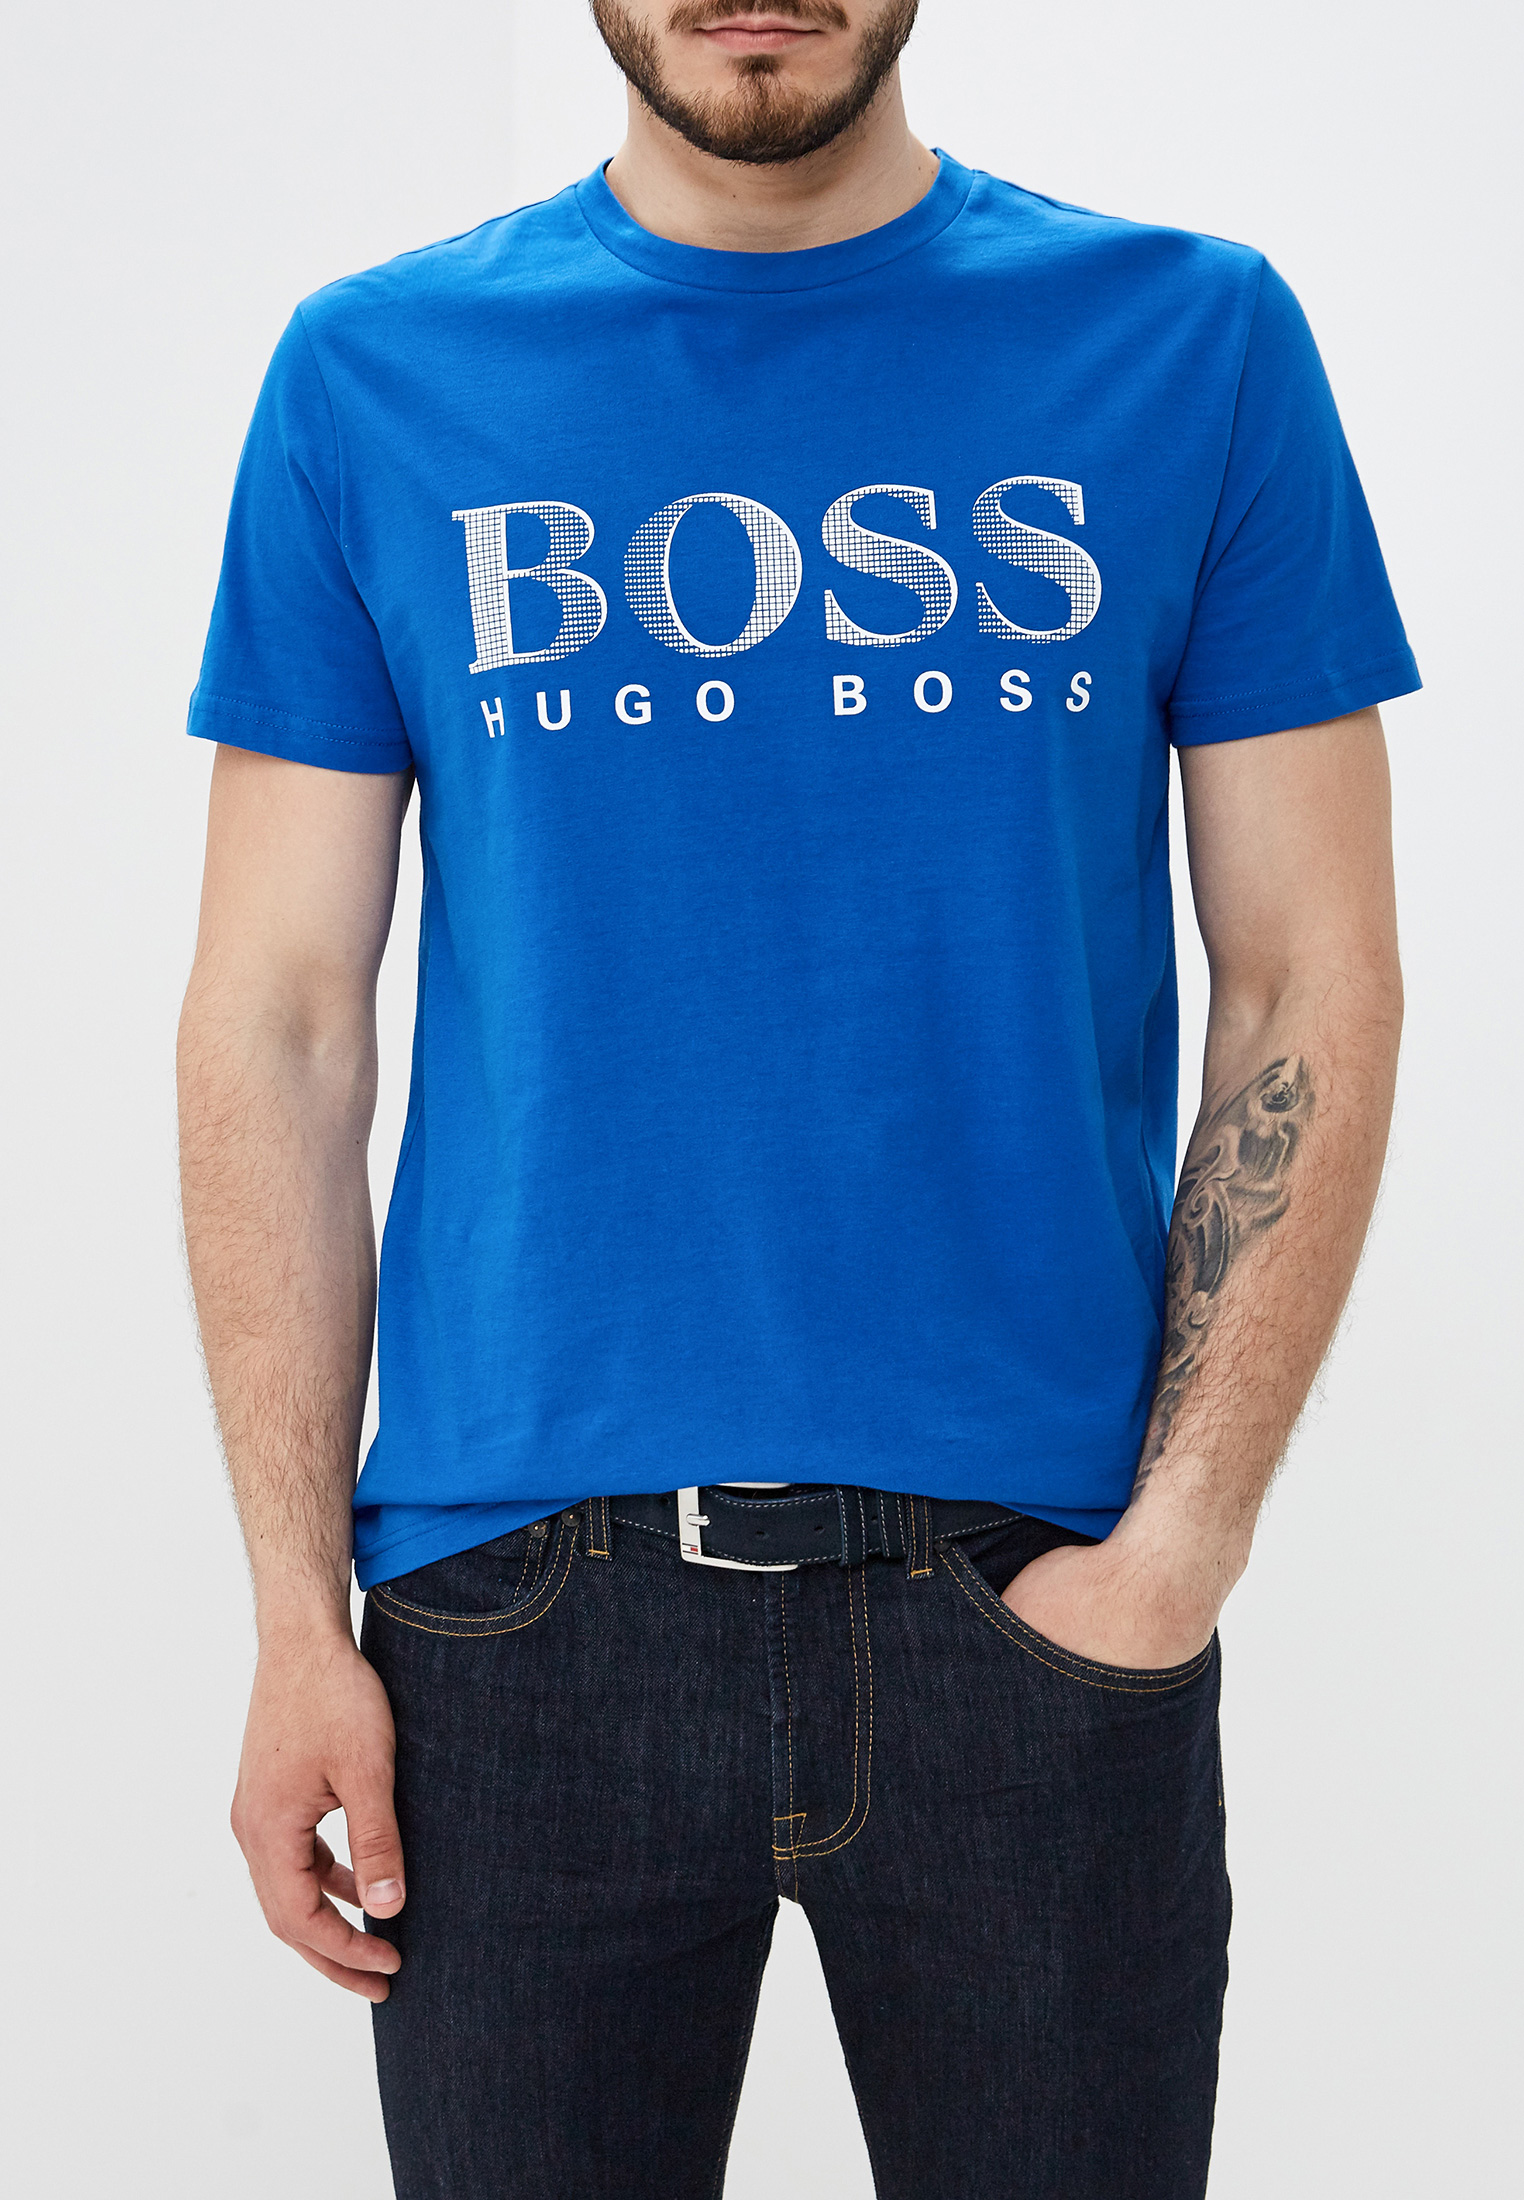 Футболки хуго босс. Босс Хуго босс футболка. Футболка Хуго босс голубая. Футболка Hugo Boss 2022. Hugo Boss футболка синяя.